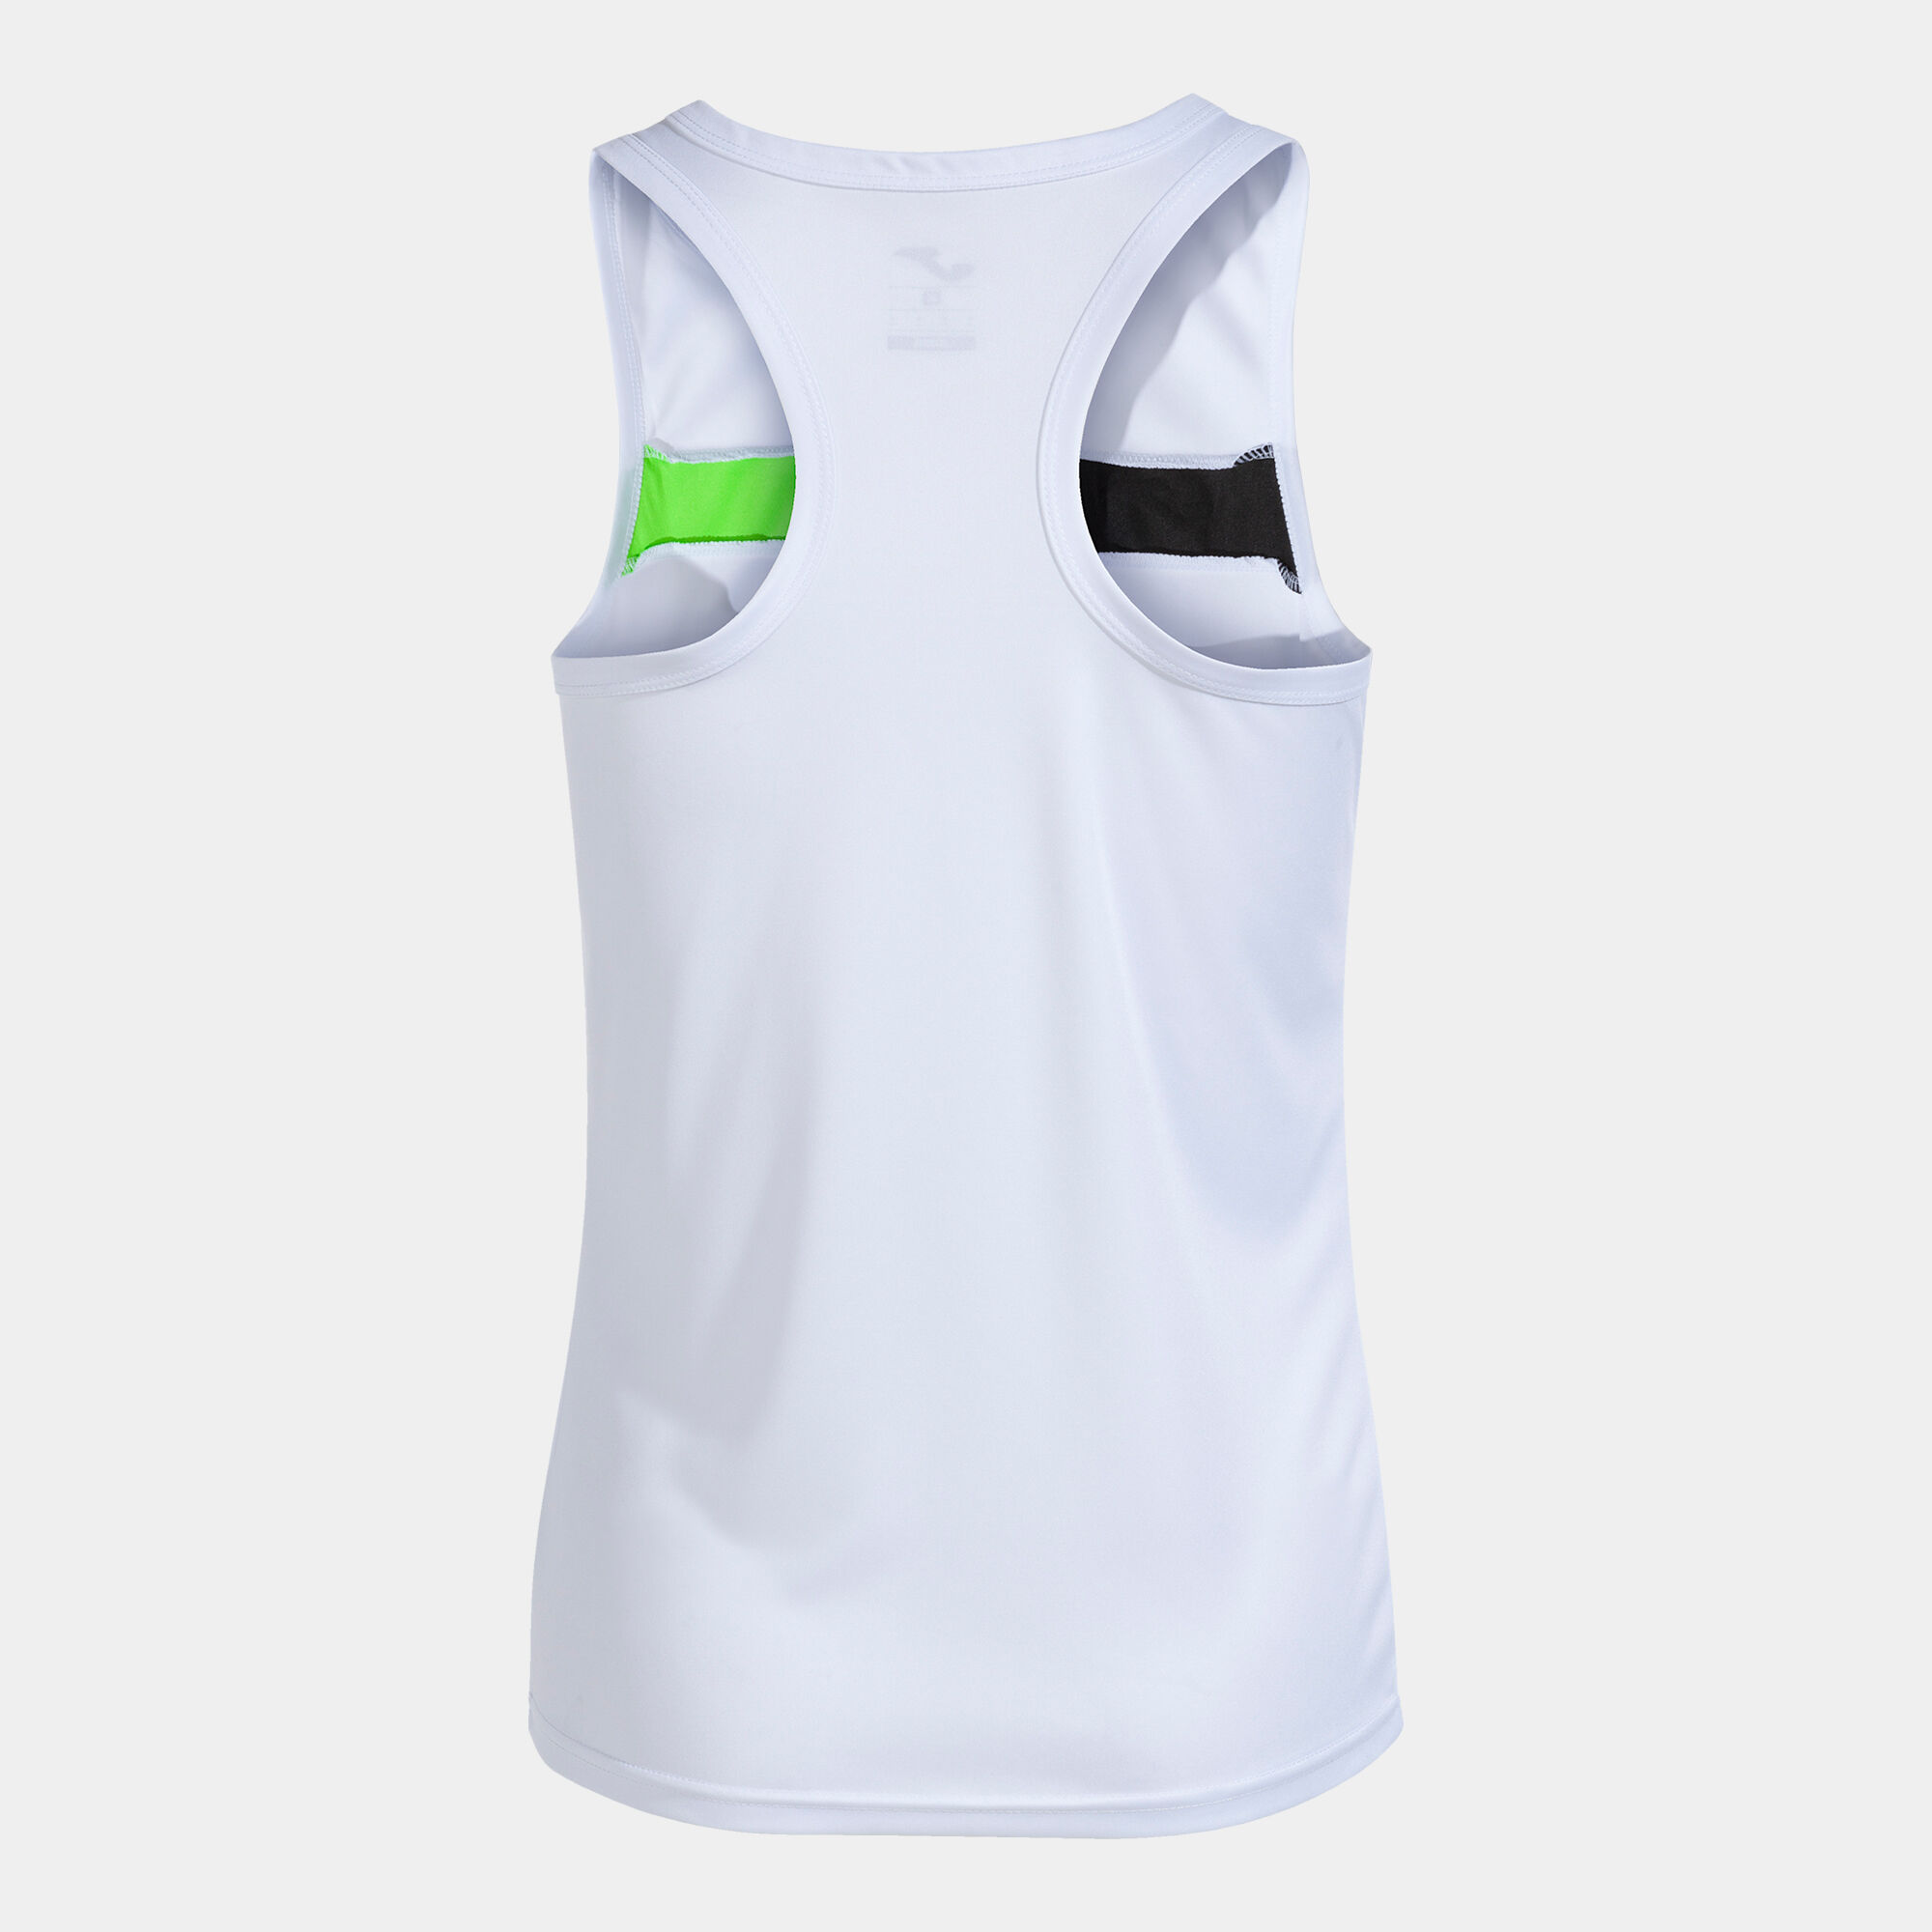 Sleeveless t-shirt woman Court white fluorescent green